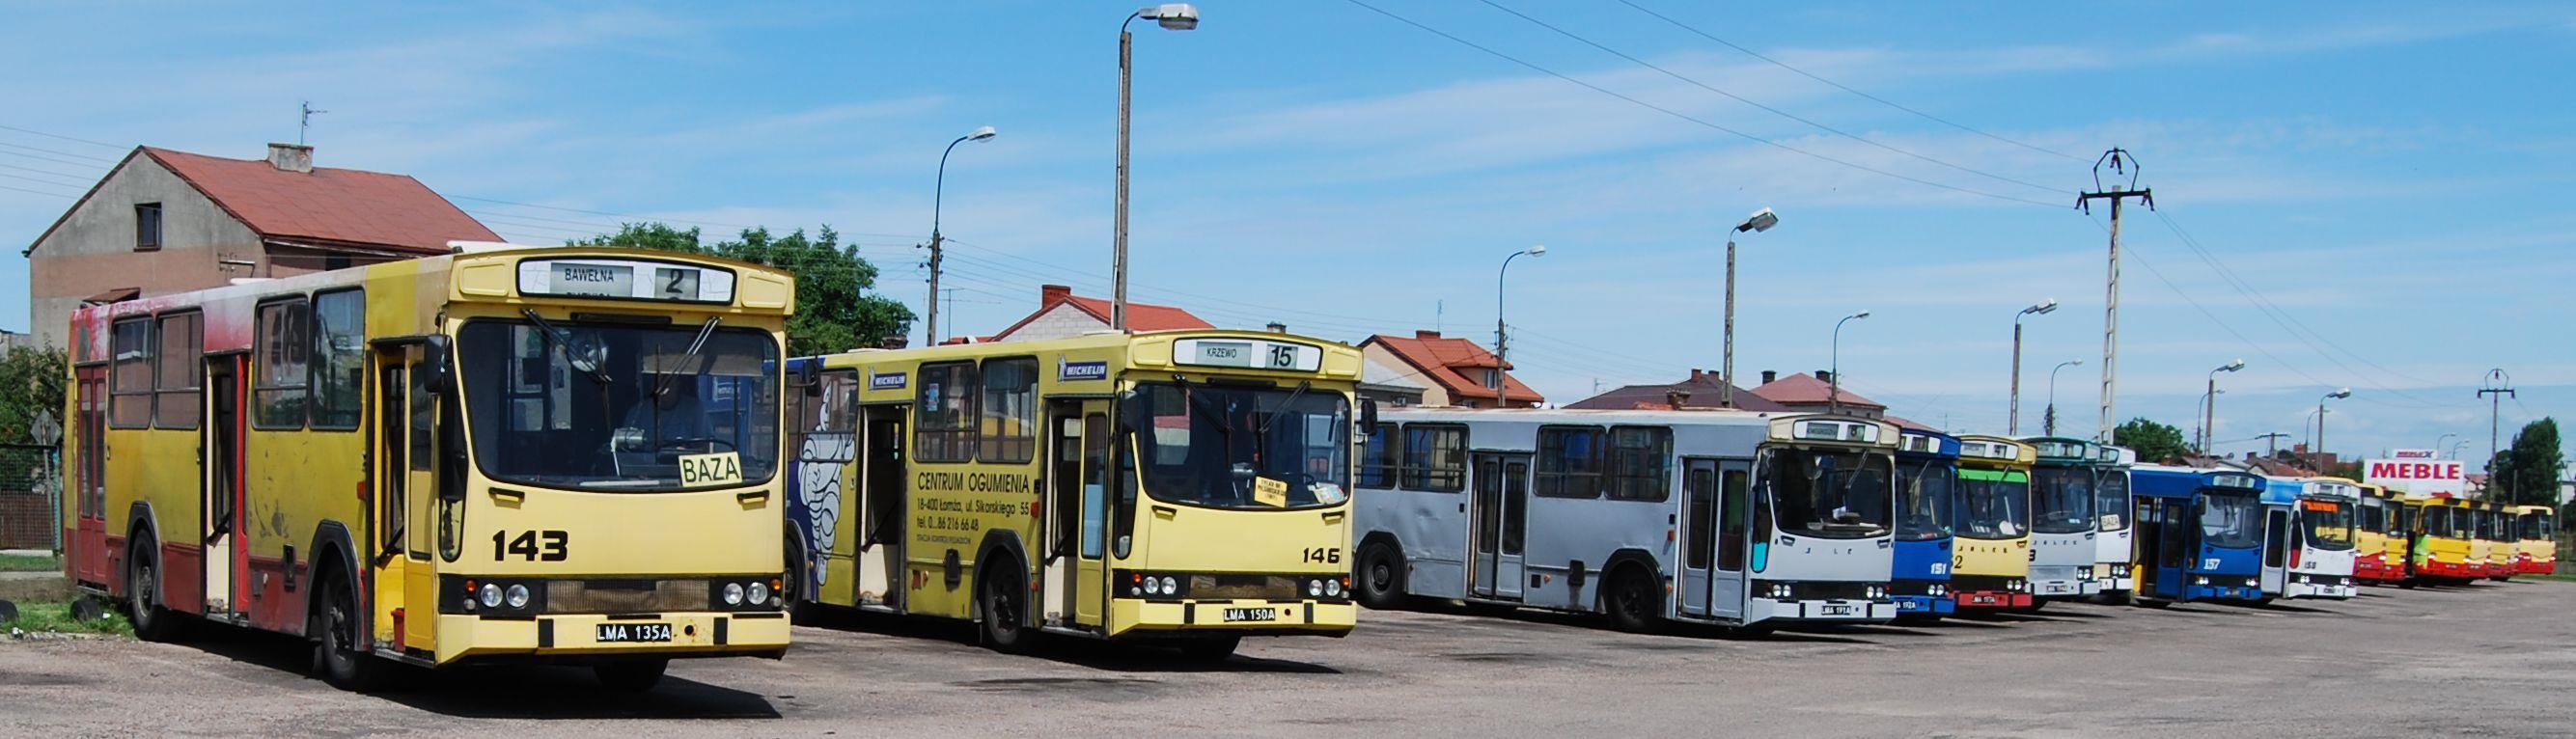 W latach 1990 1996 zakupy autobusów były śladowe, w latach 1997 1999 nie zakupiono żadnego autobusu.